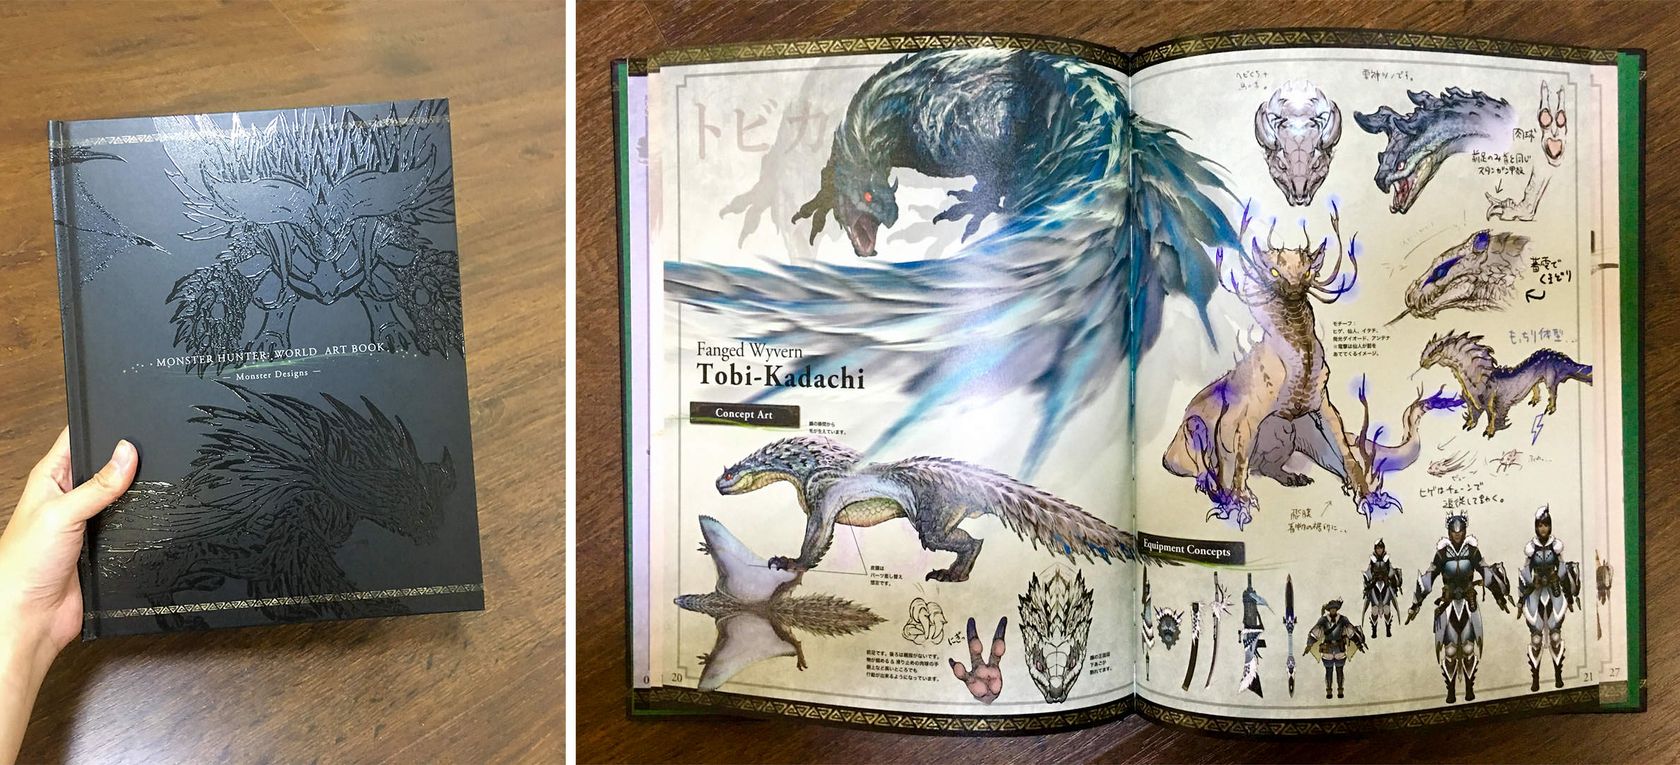 Monster Hunter World Concept Art Book Request Details.